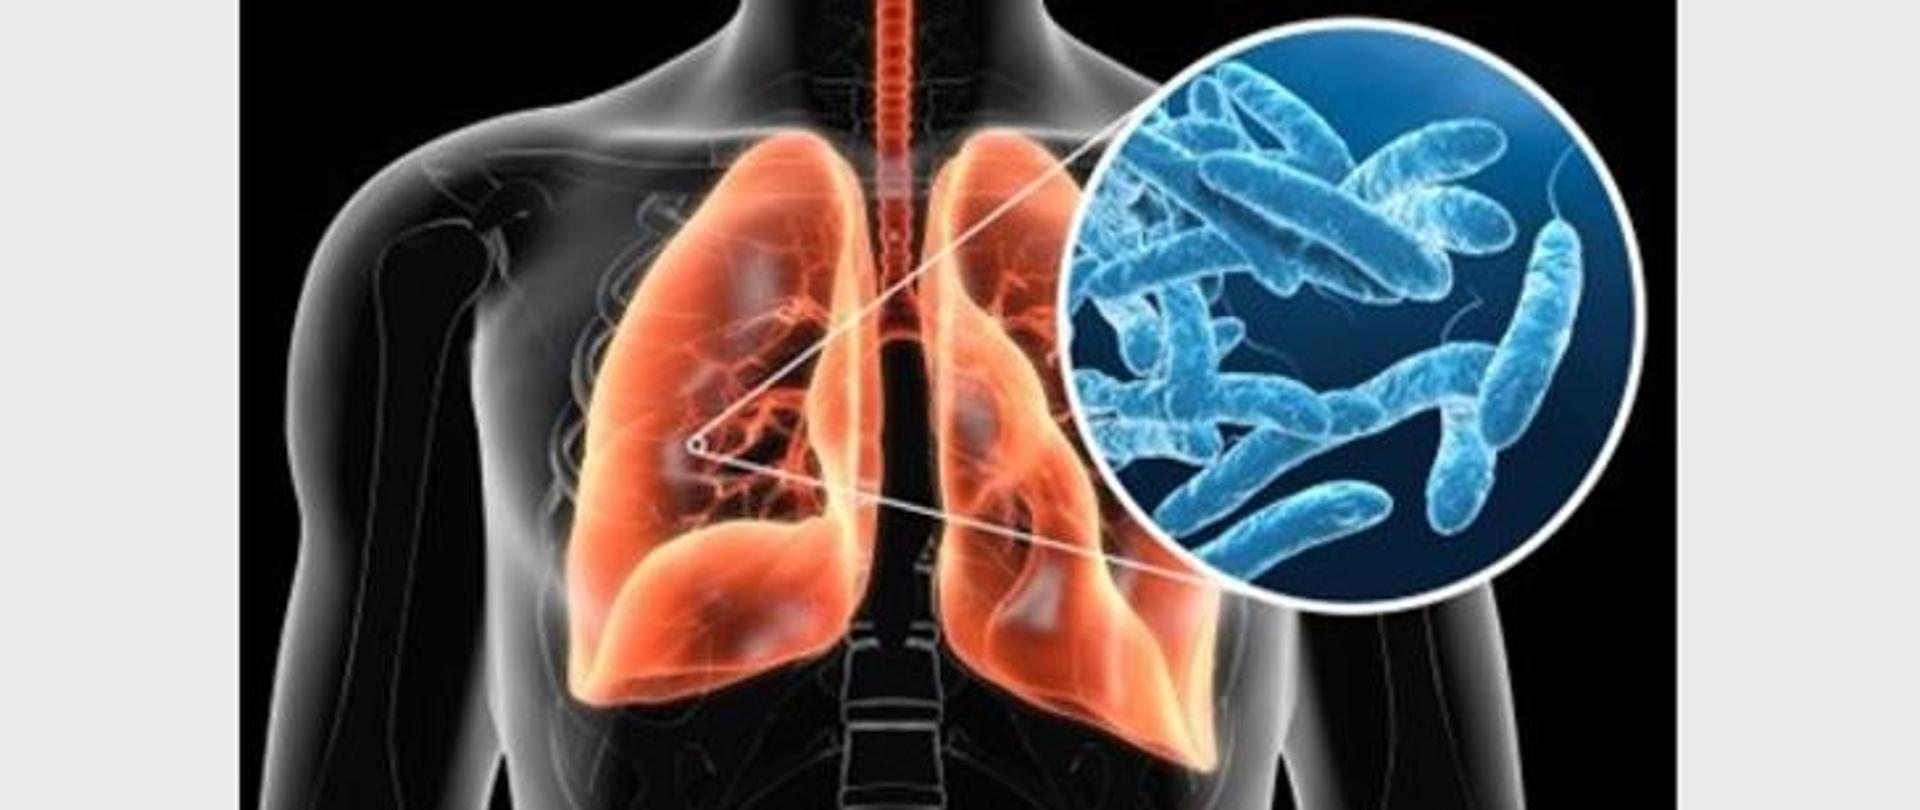 Zdjęcie rentgenowskie klatki piersiowej człowieka. W kolorze pomarańczowym wyróżnione są płuca. W powiększeniu mikroskopijnym na niebiesko w kole widać bakterie Legionelli.